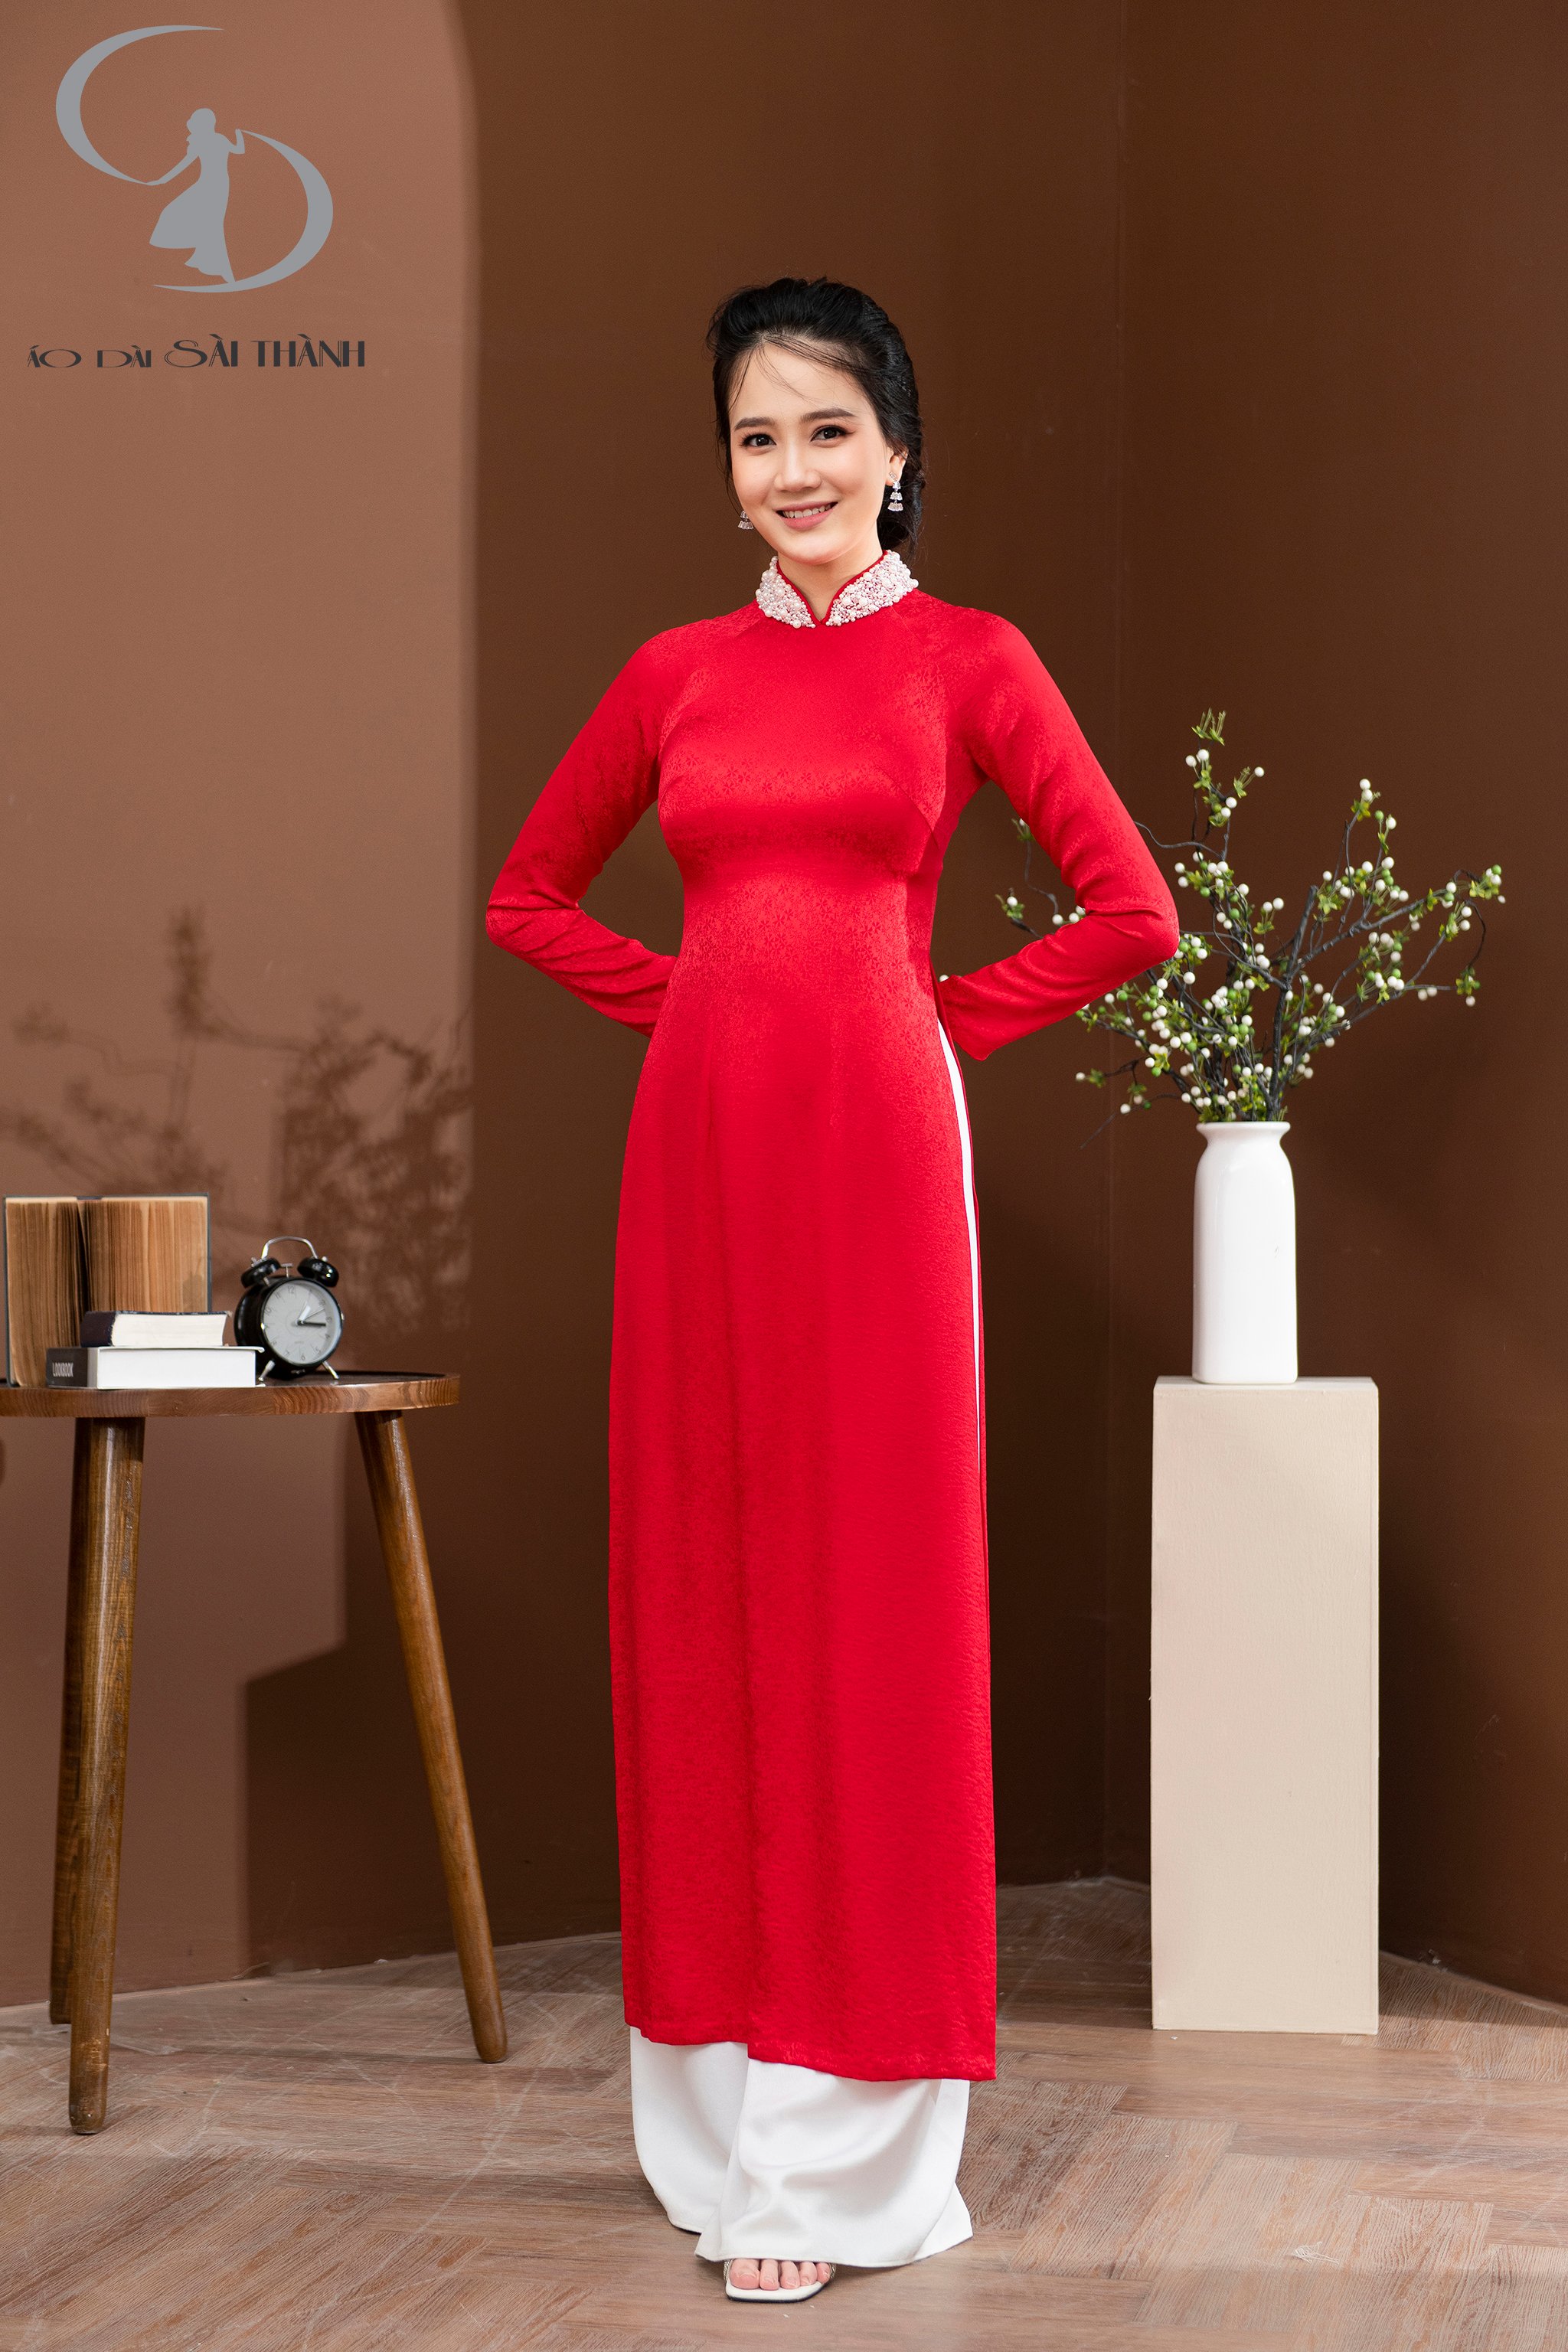 Dẫn đầu xu hướng thời trang áo dài, Áo dài Sài Thành tự hào là một trong só những cửa hàng cung cấp dịch vụ may, bán, cho thuê áo dài chất lượng nhất.